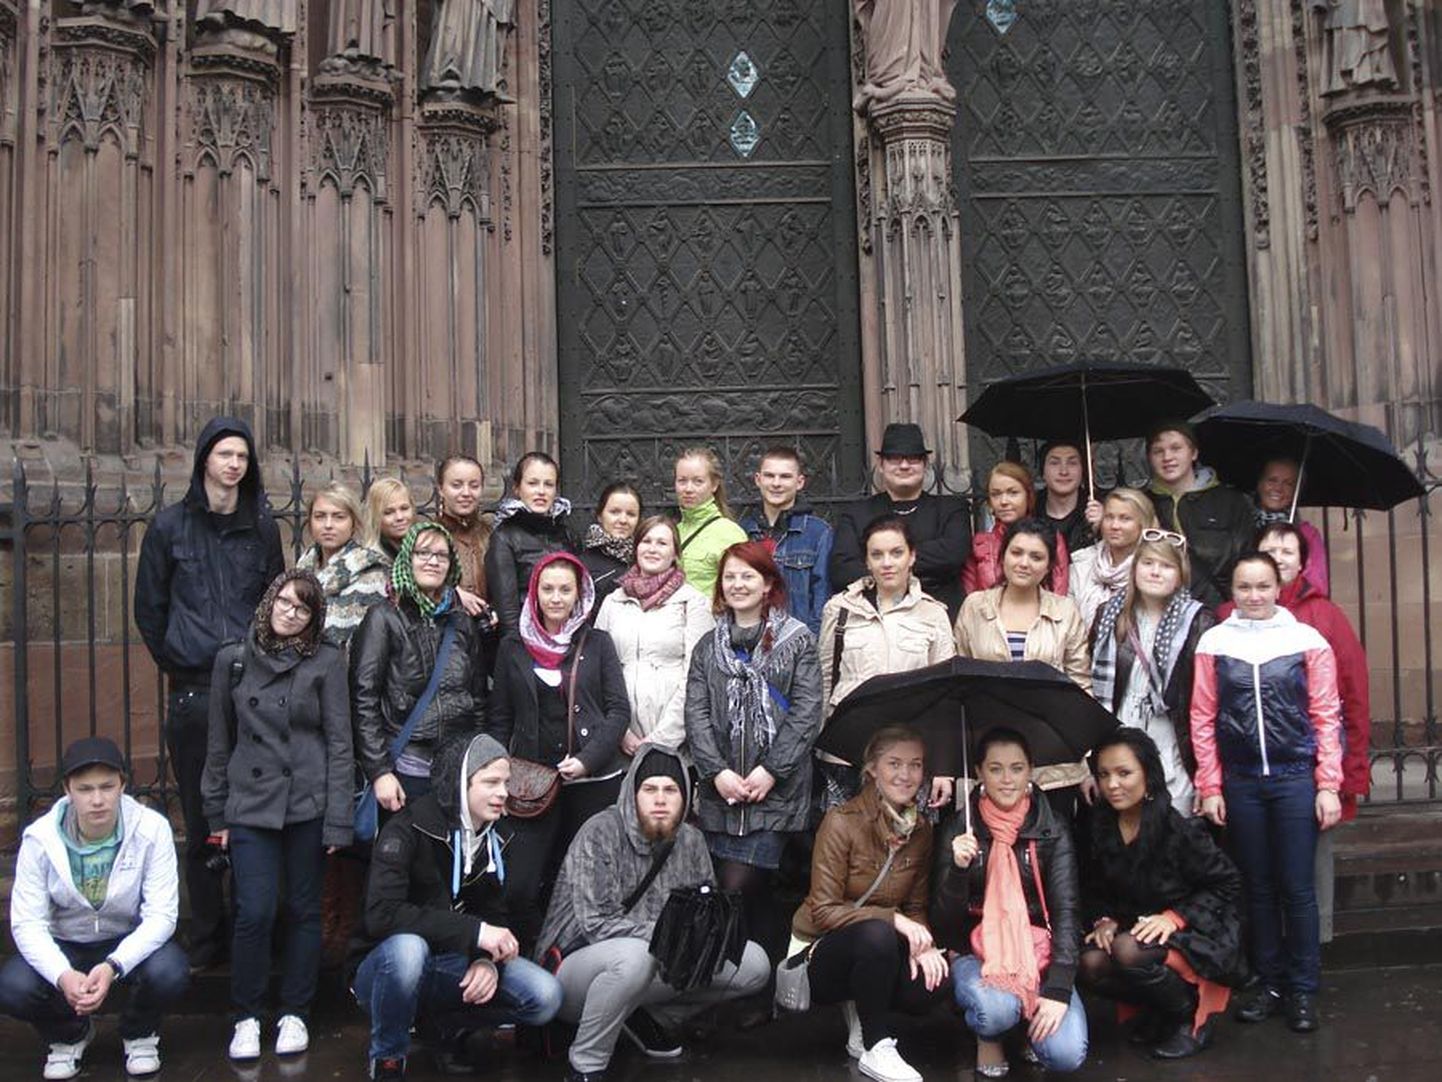 Reis Strasbourgi jäi Jakobsoni gümnaasiumi XII-c klassi õpilastele viimaseks ühiseks ürituseks enne kooli lõpetamist.